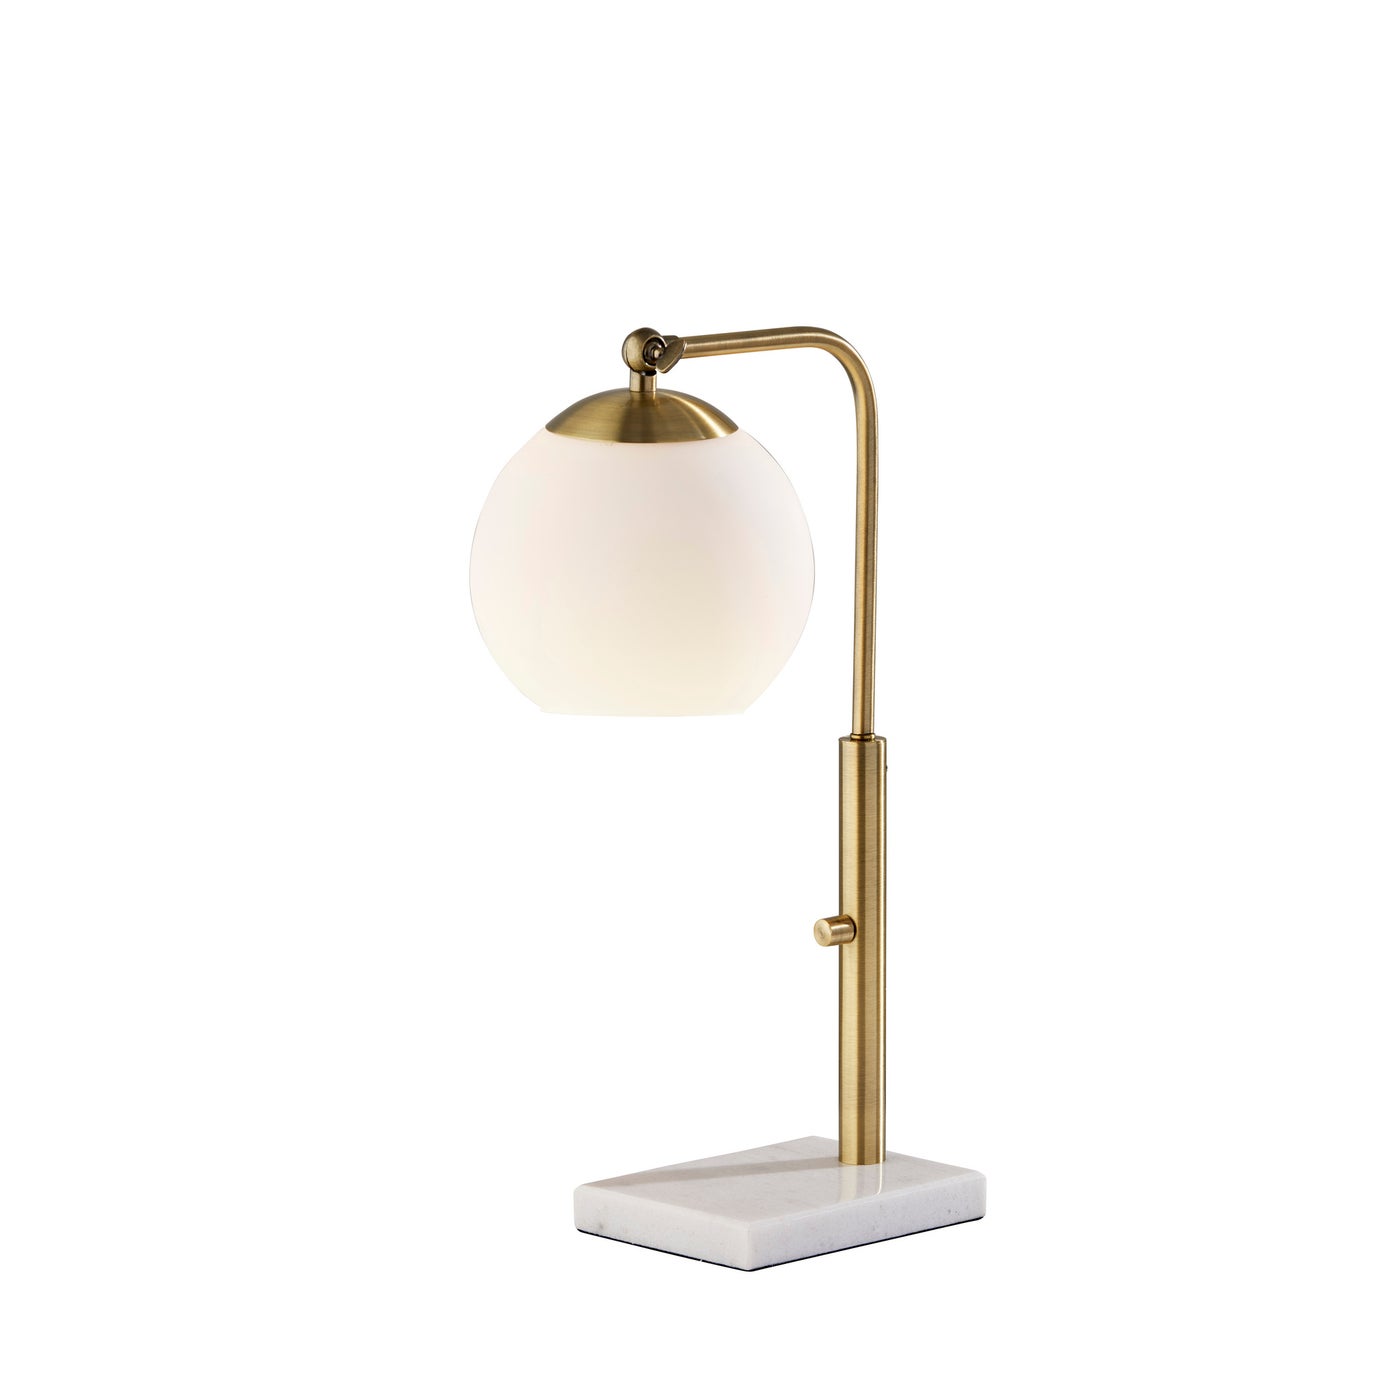 Adesso Home - 4314-21 - Desk Lamp - Remi - Antique Brass